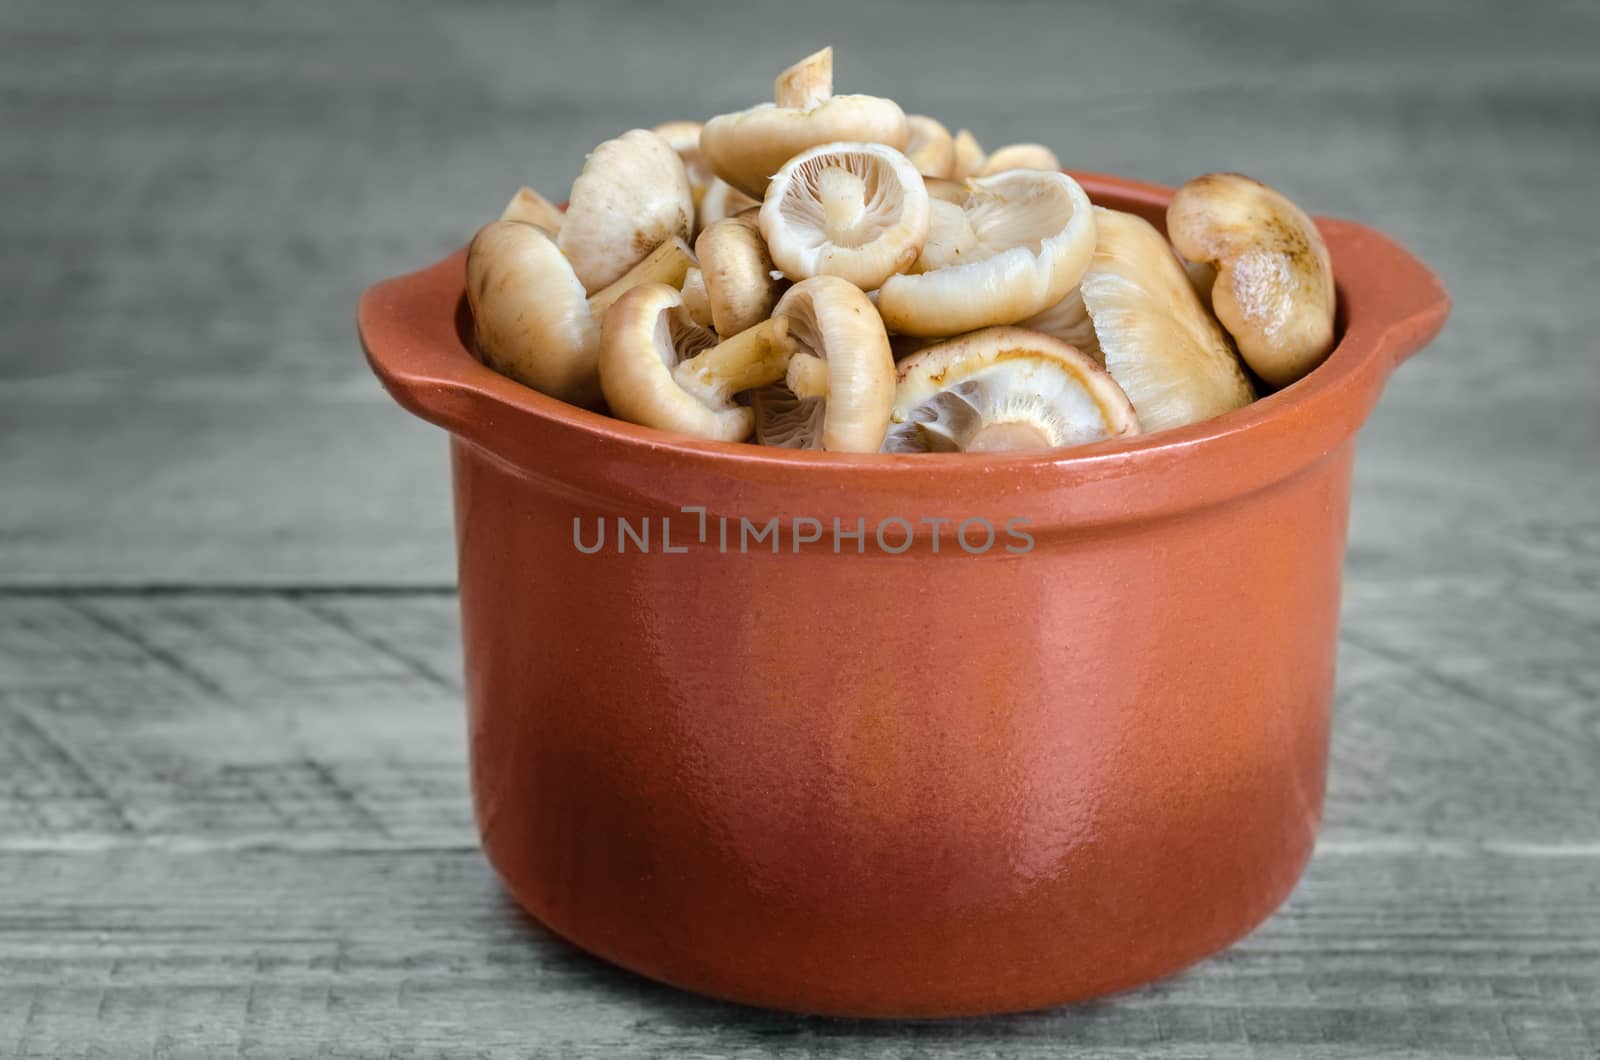 Raw mushrooms in a ceramic pot by Gaina